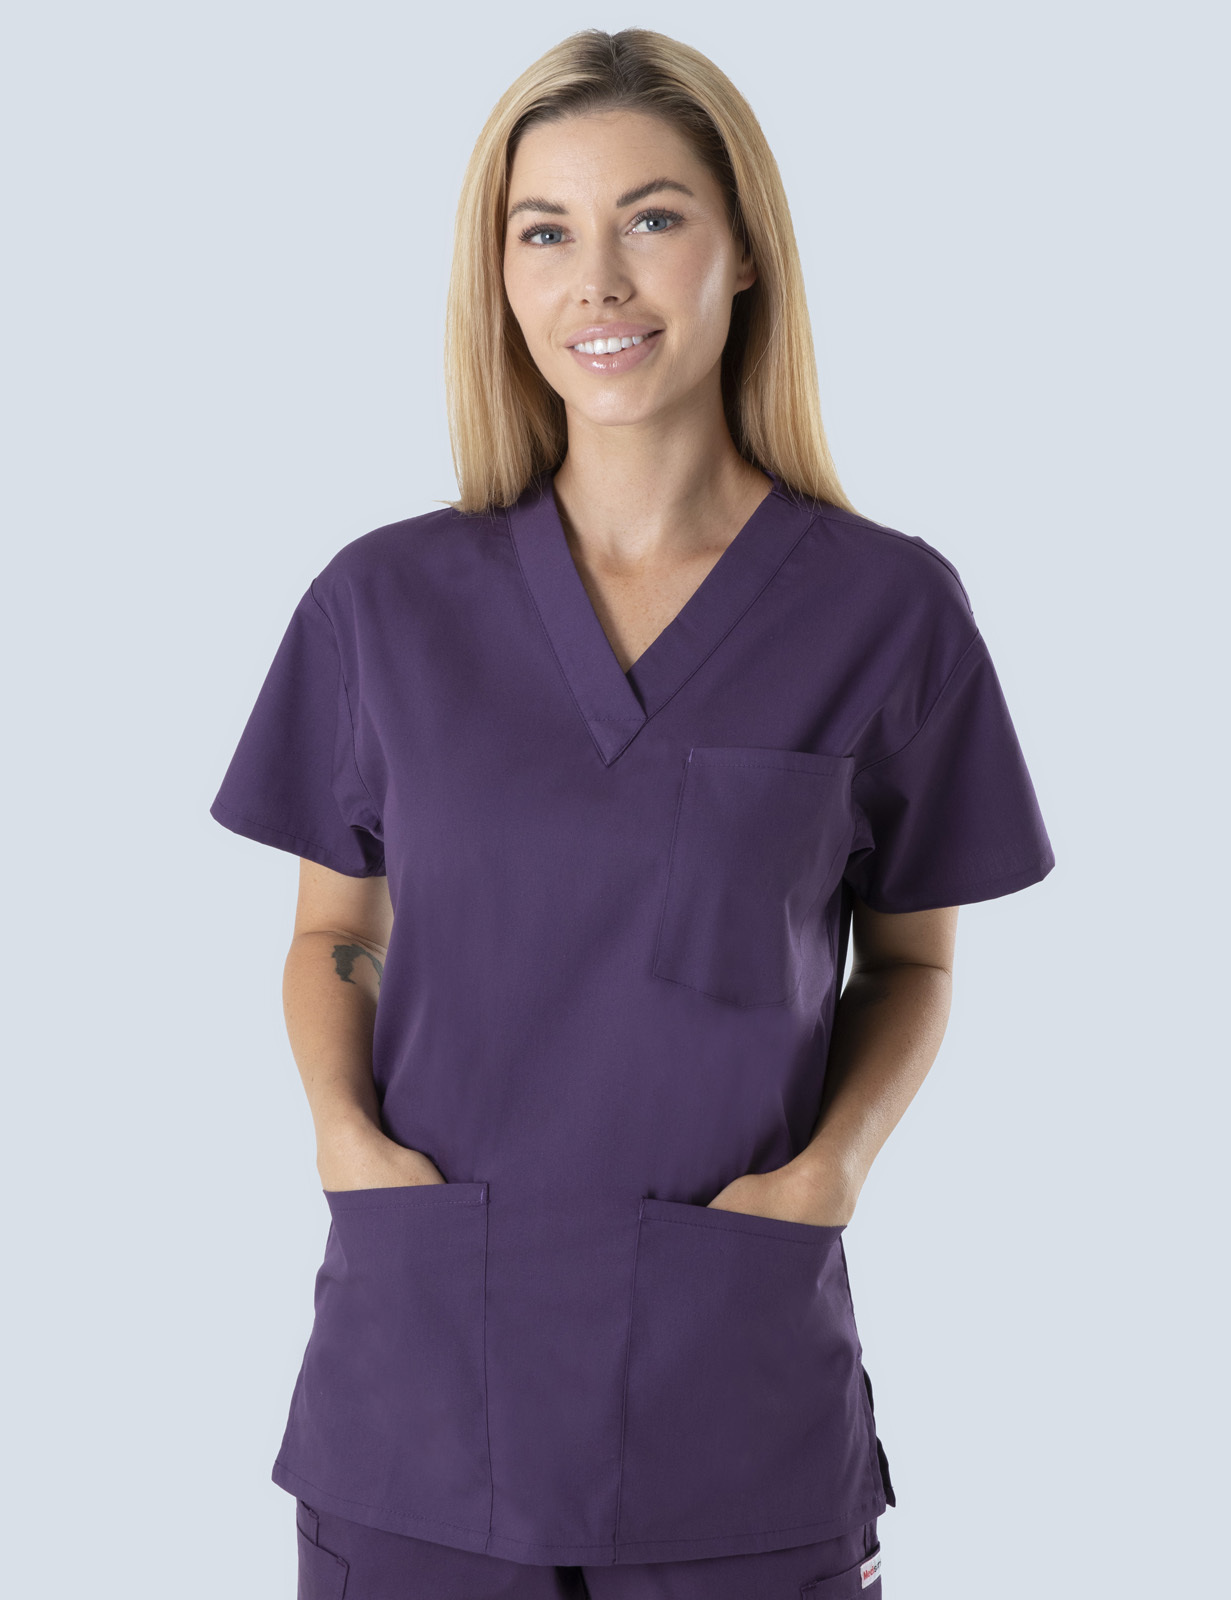 Palm Island Hospital - Nursing (4 Pocket Scrub Top in Aubergine incl Logos)